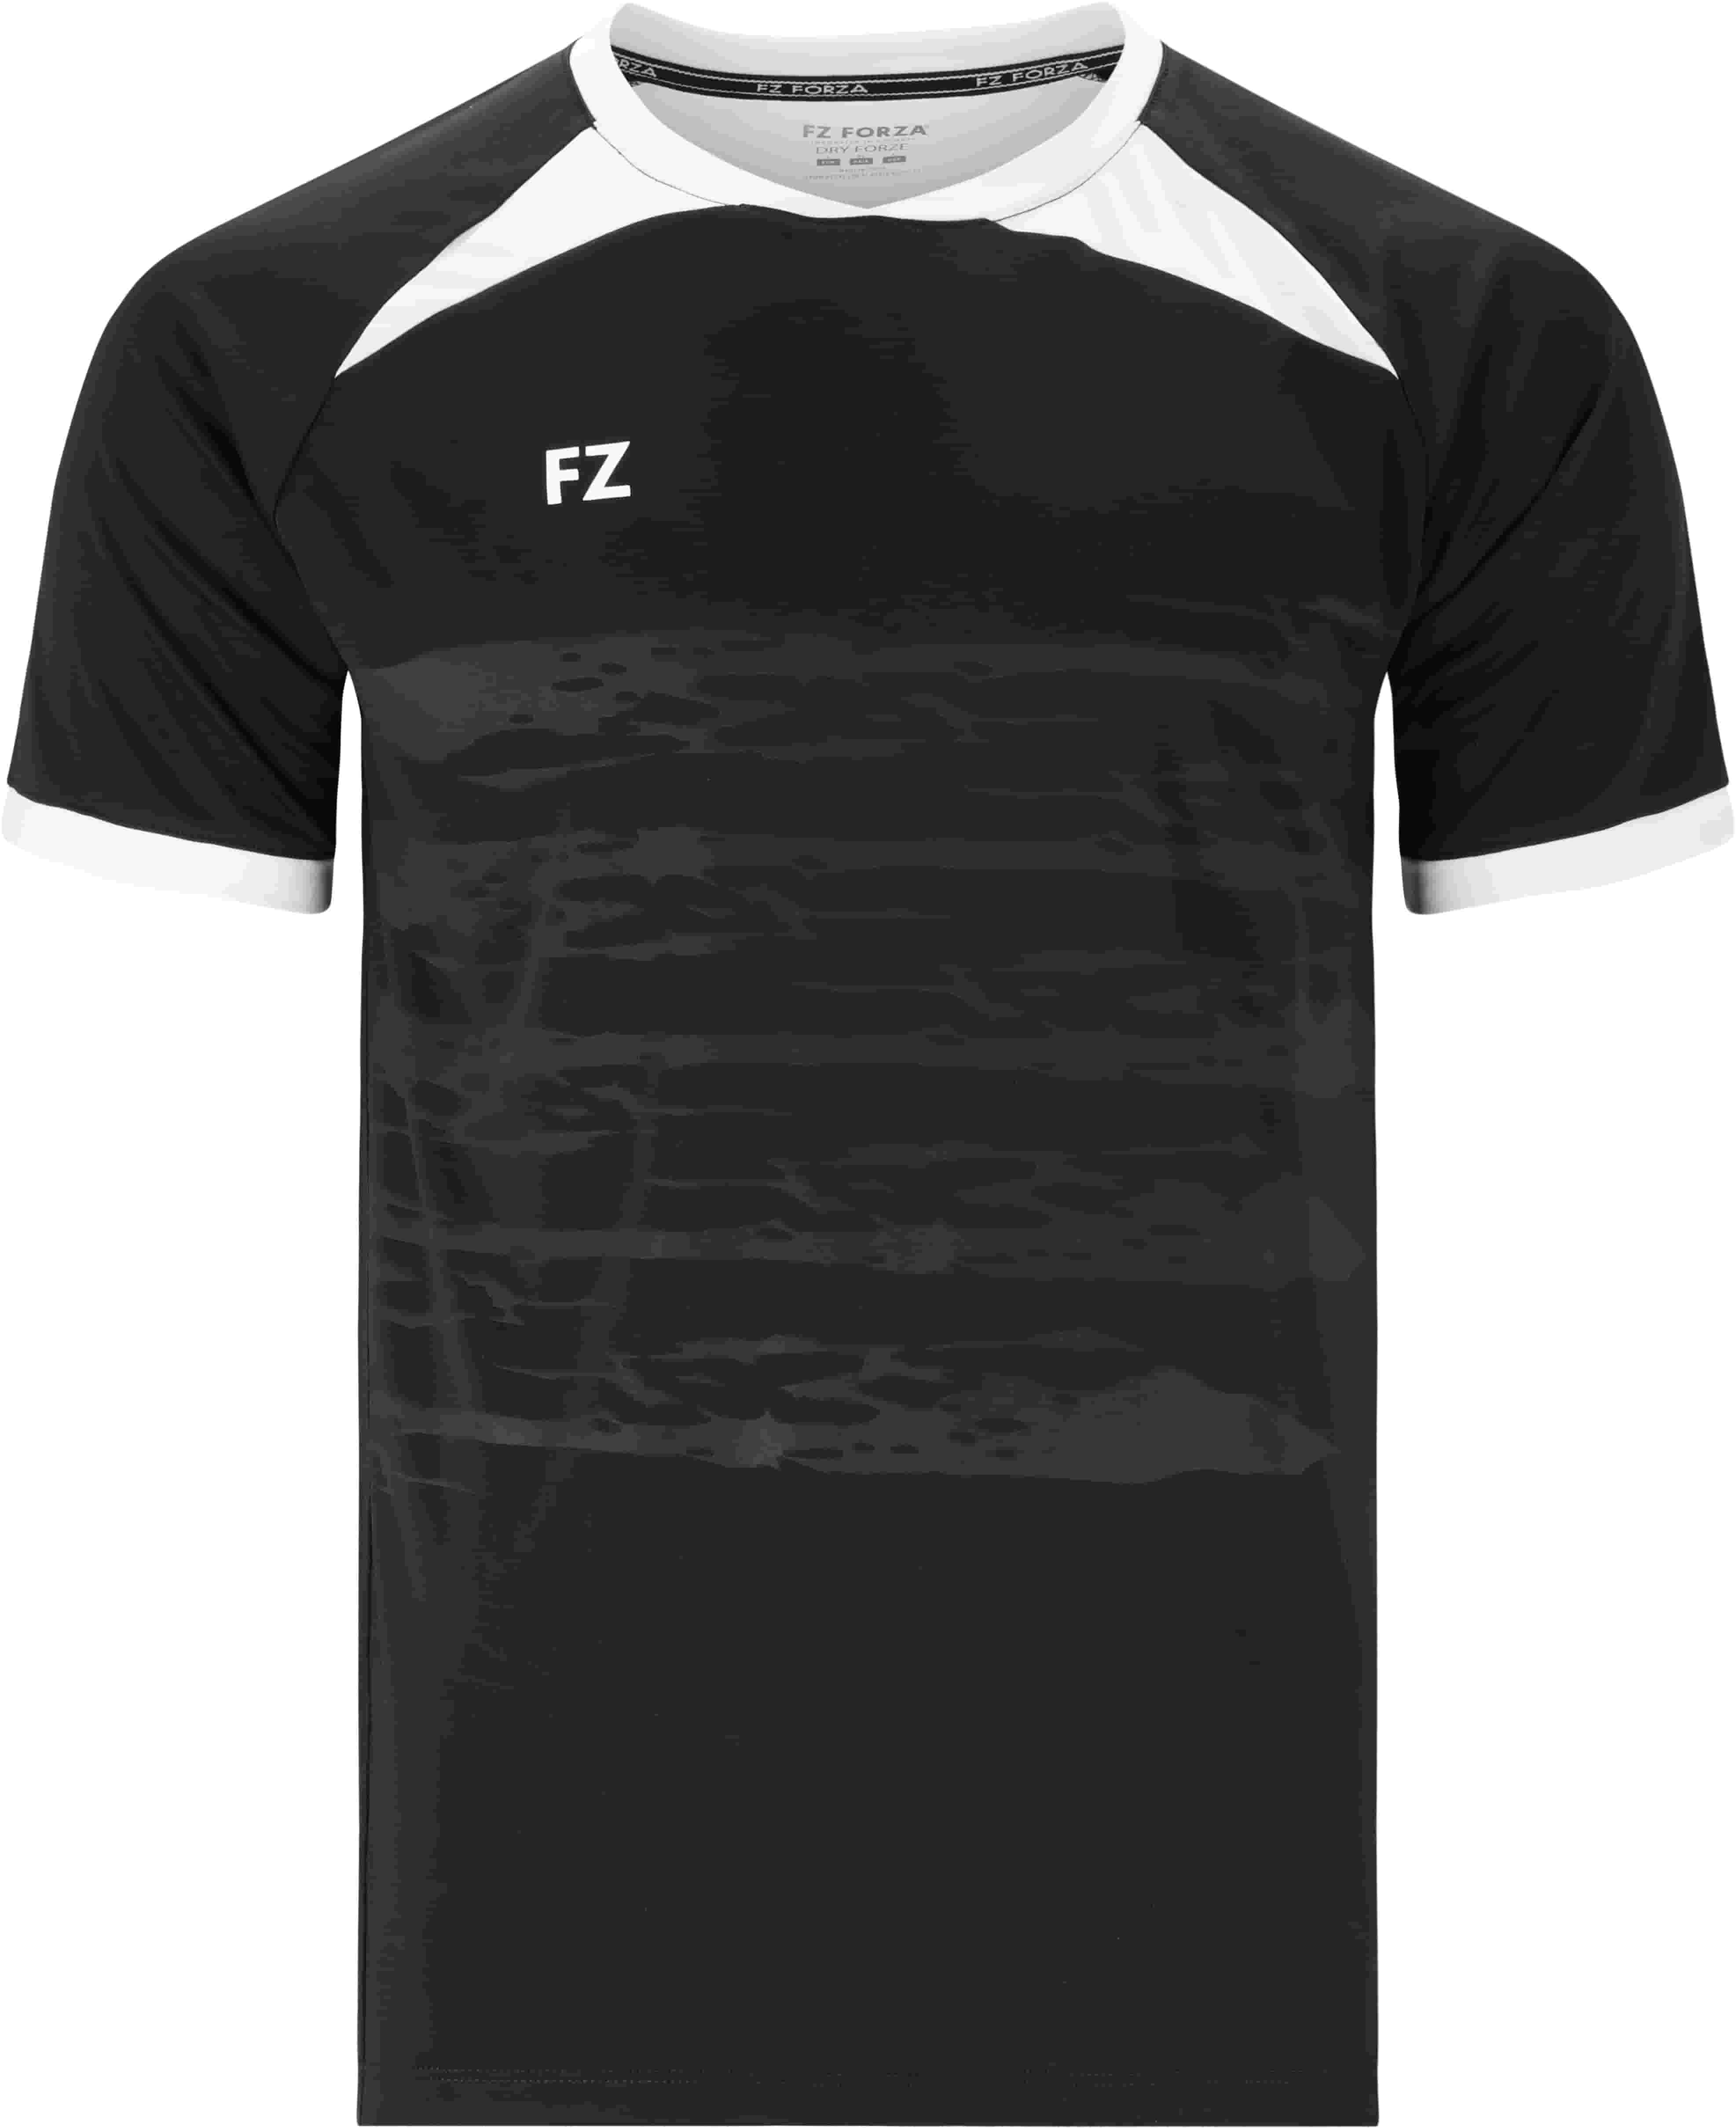 FZ FORZA Agentin M T-Shirt - Schwarz 3XL